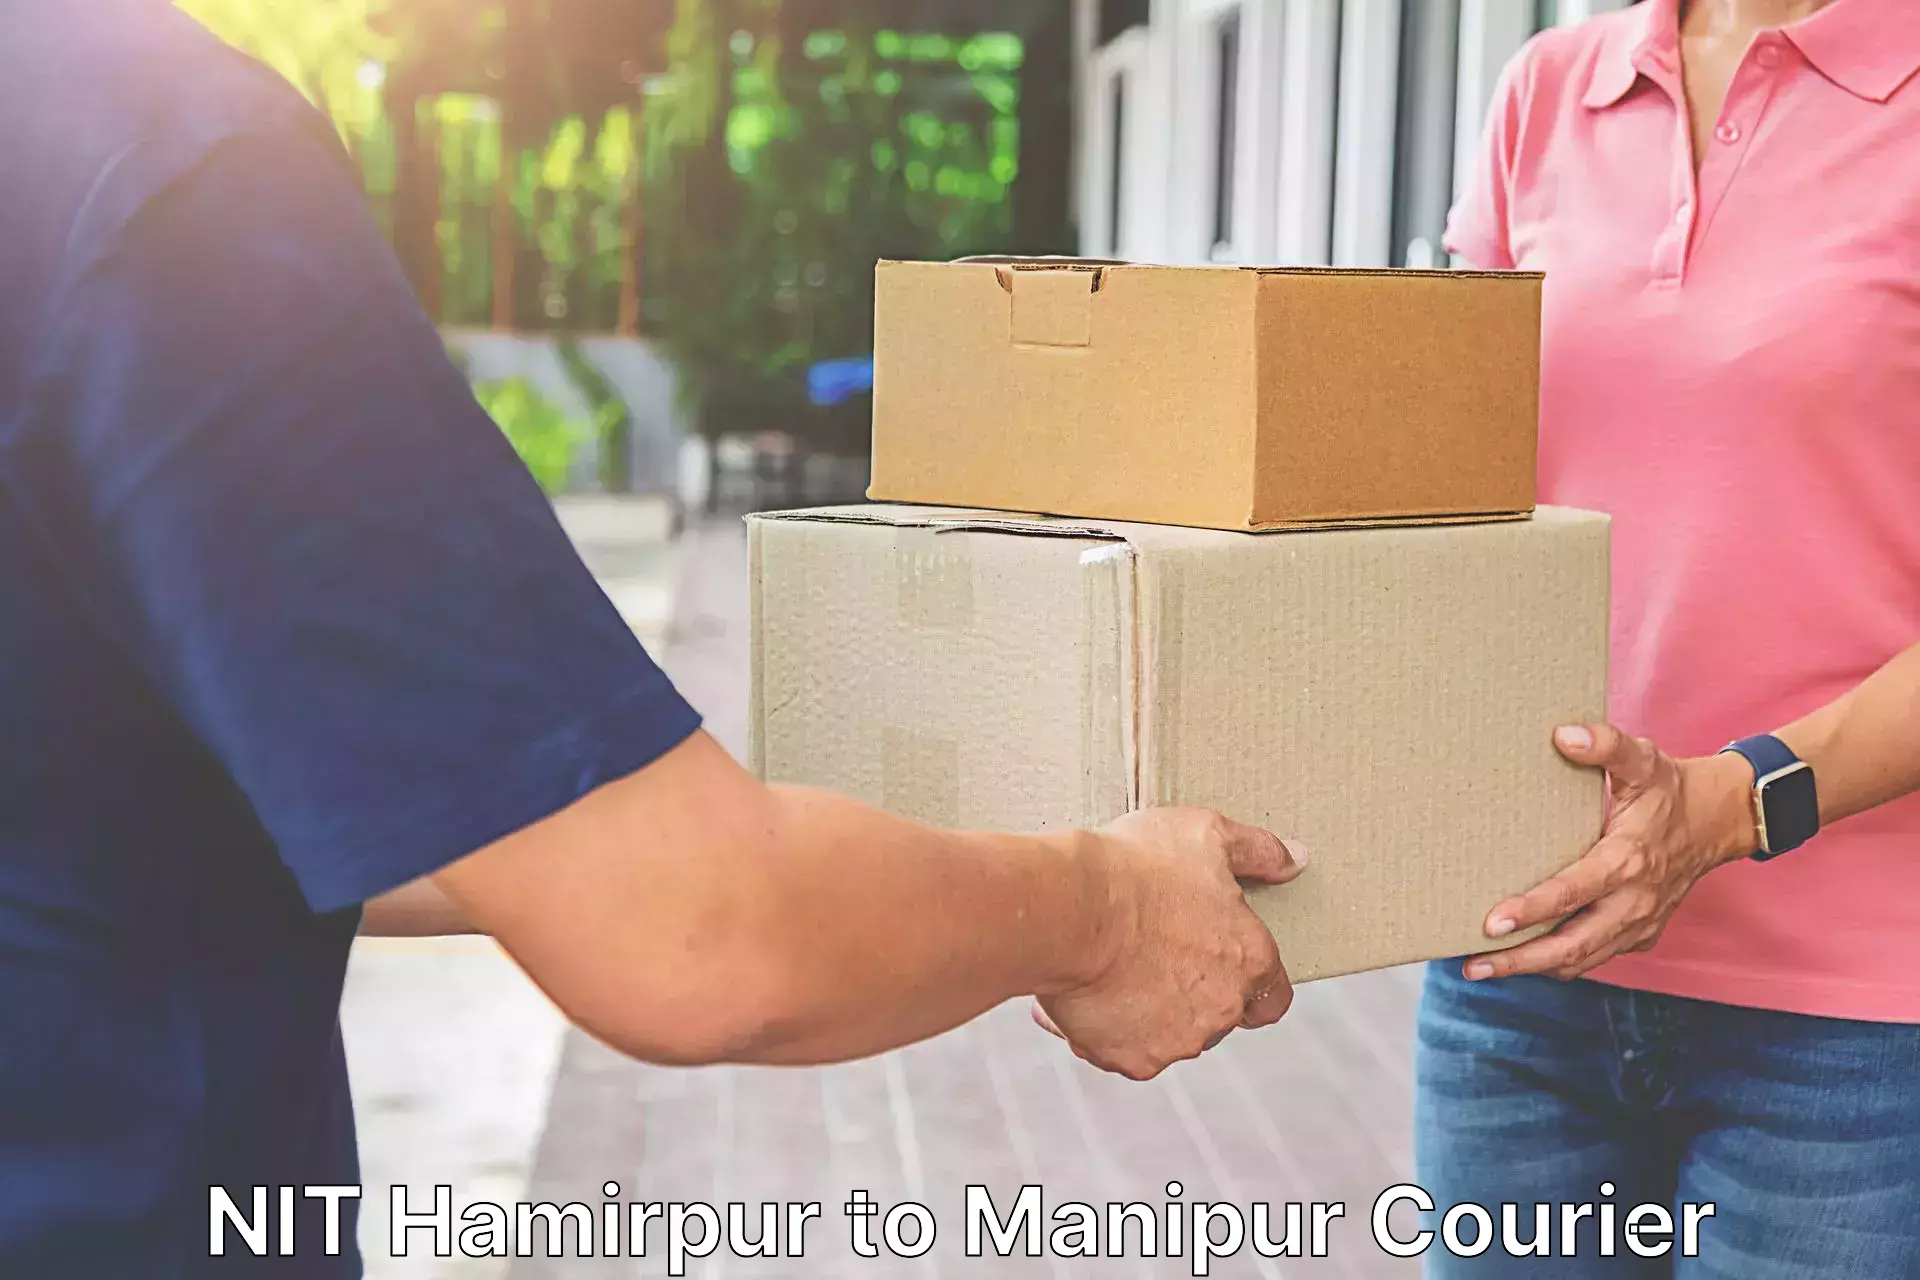 User-friendly delivery service NIT Hamirpur to Churachandpur